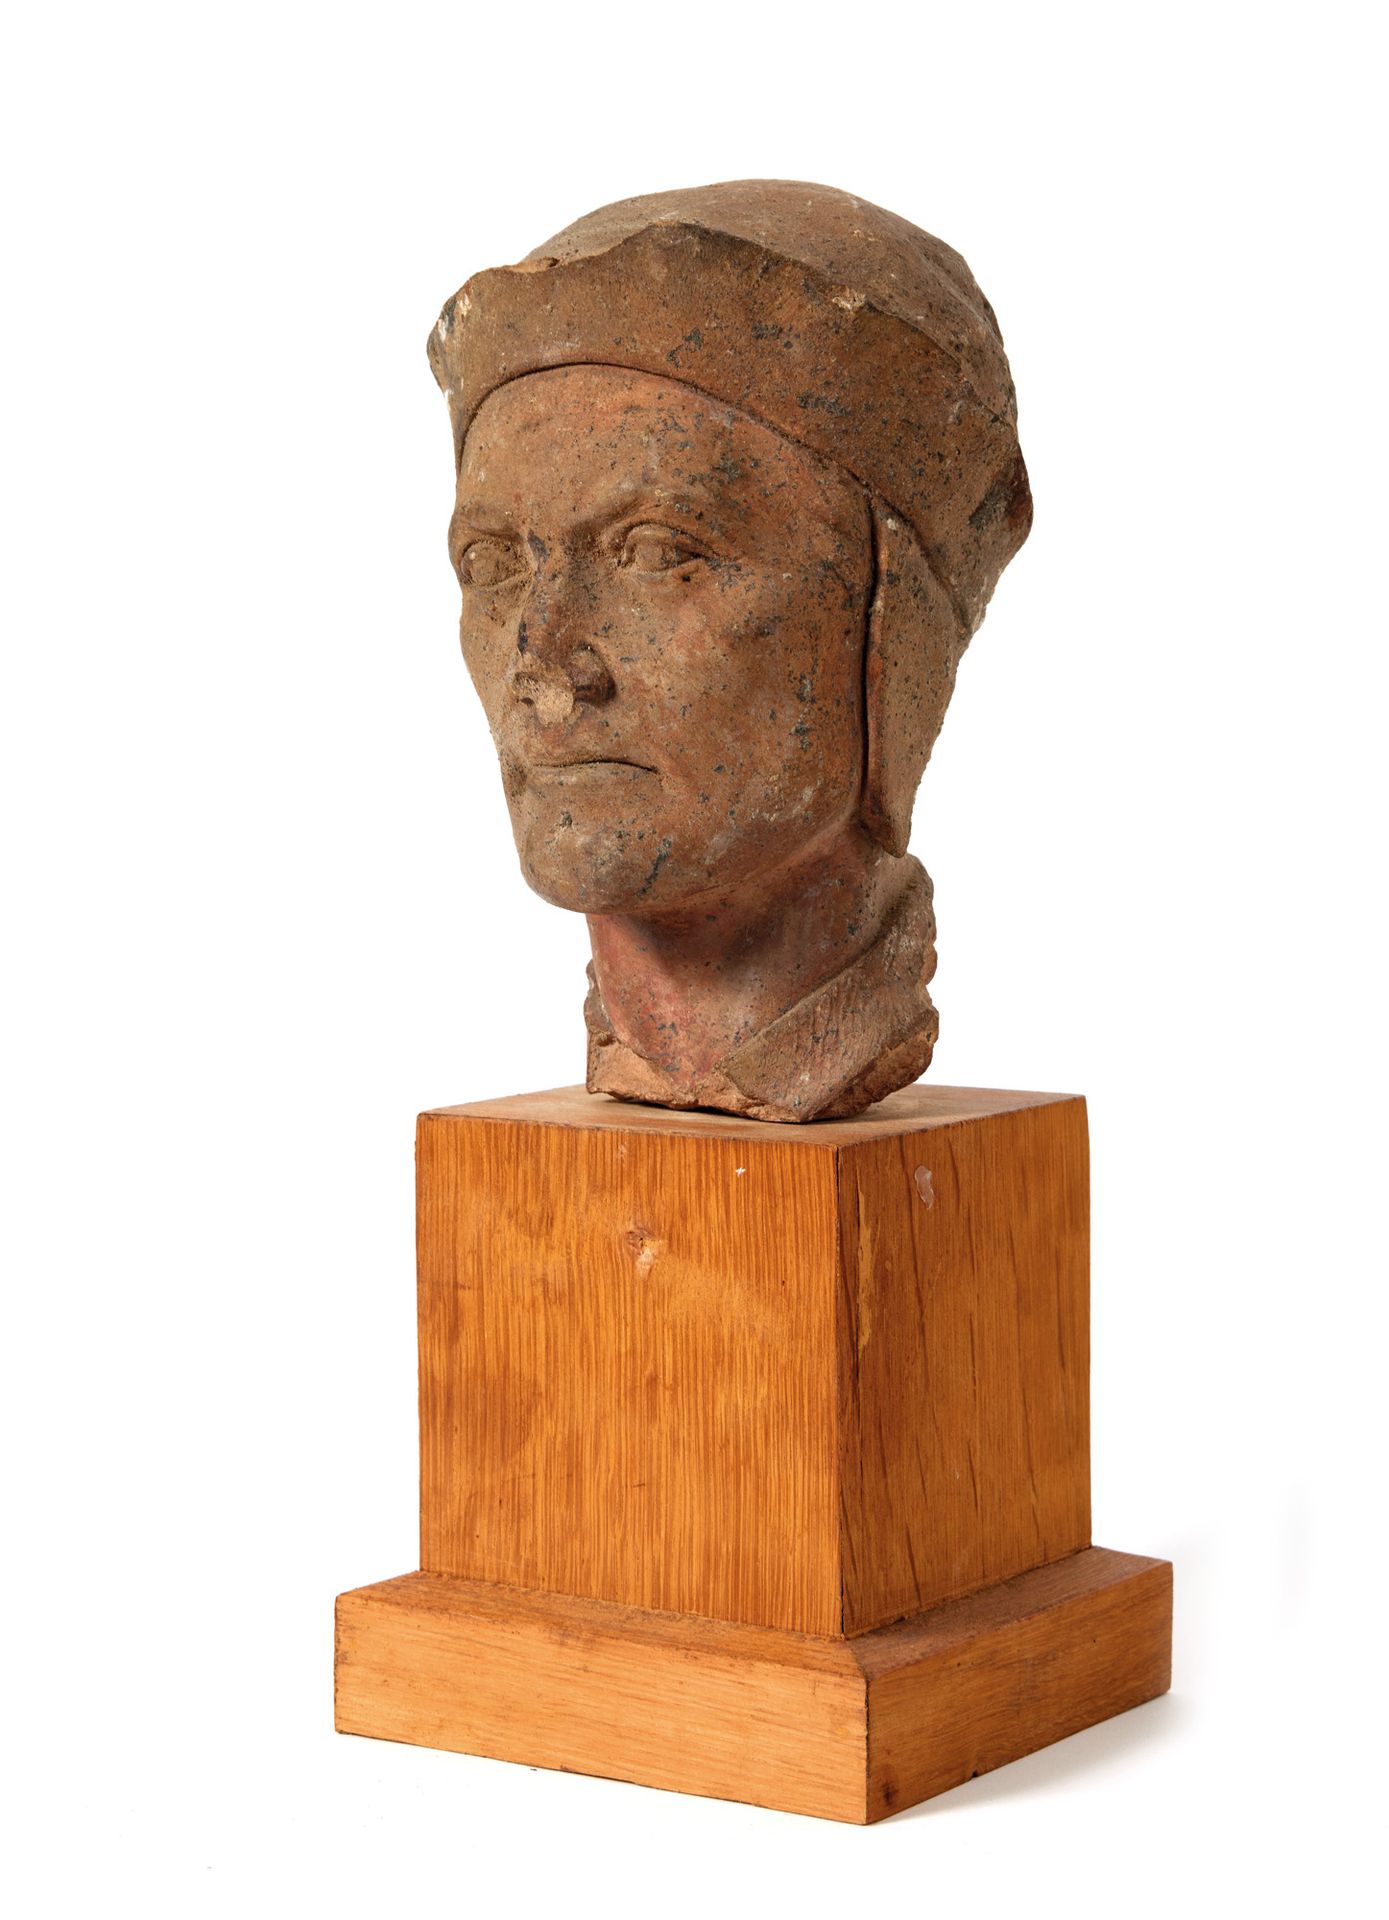 Tête 头像
可能代表但丁肖像的陶制头像 
19世纪
高度：20厘米
天然木质底座
高：13.5厘米；宽：13厘米
(事故和缺失部分)